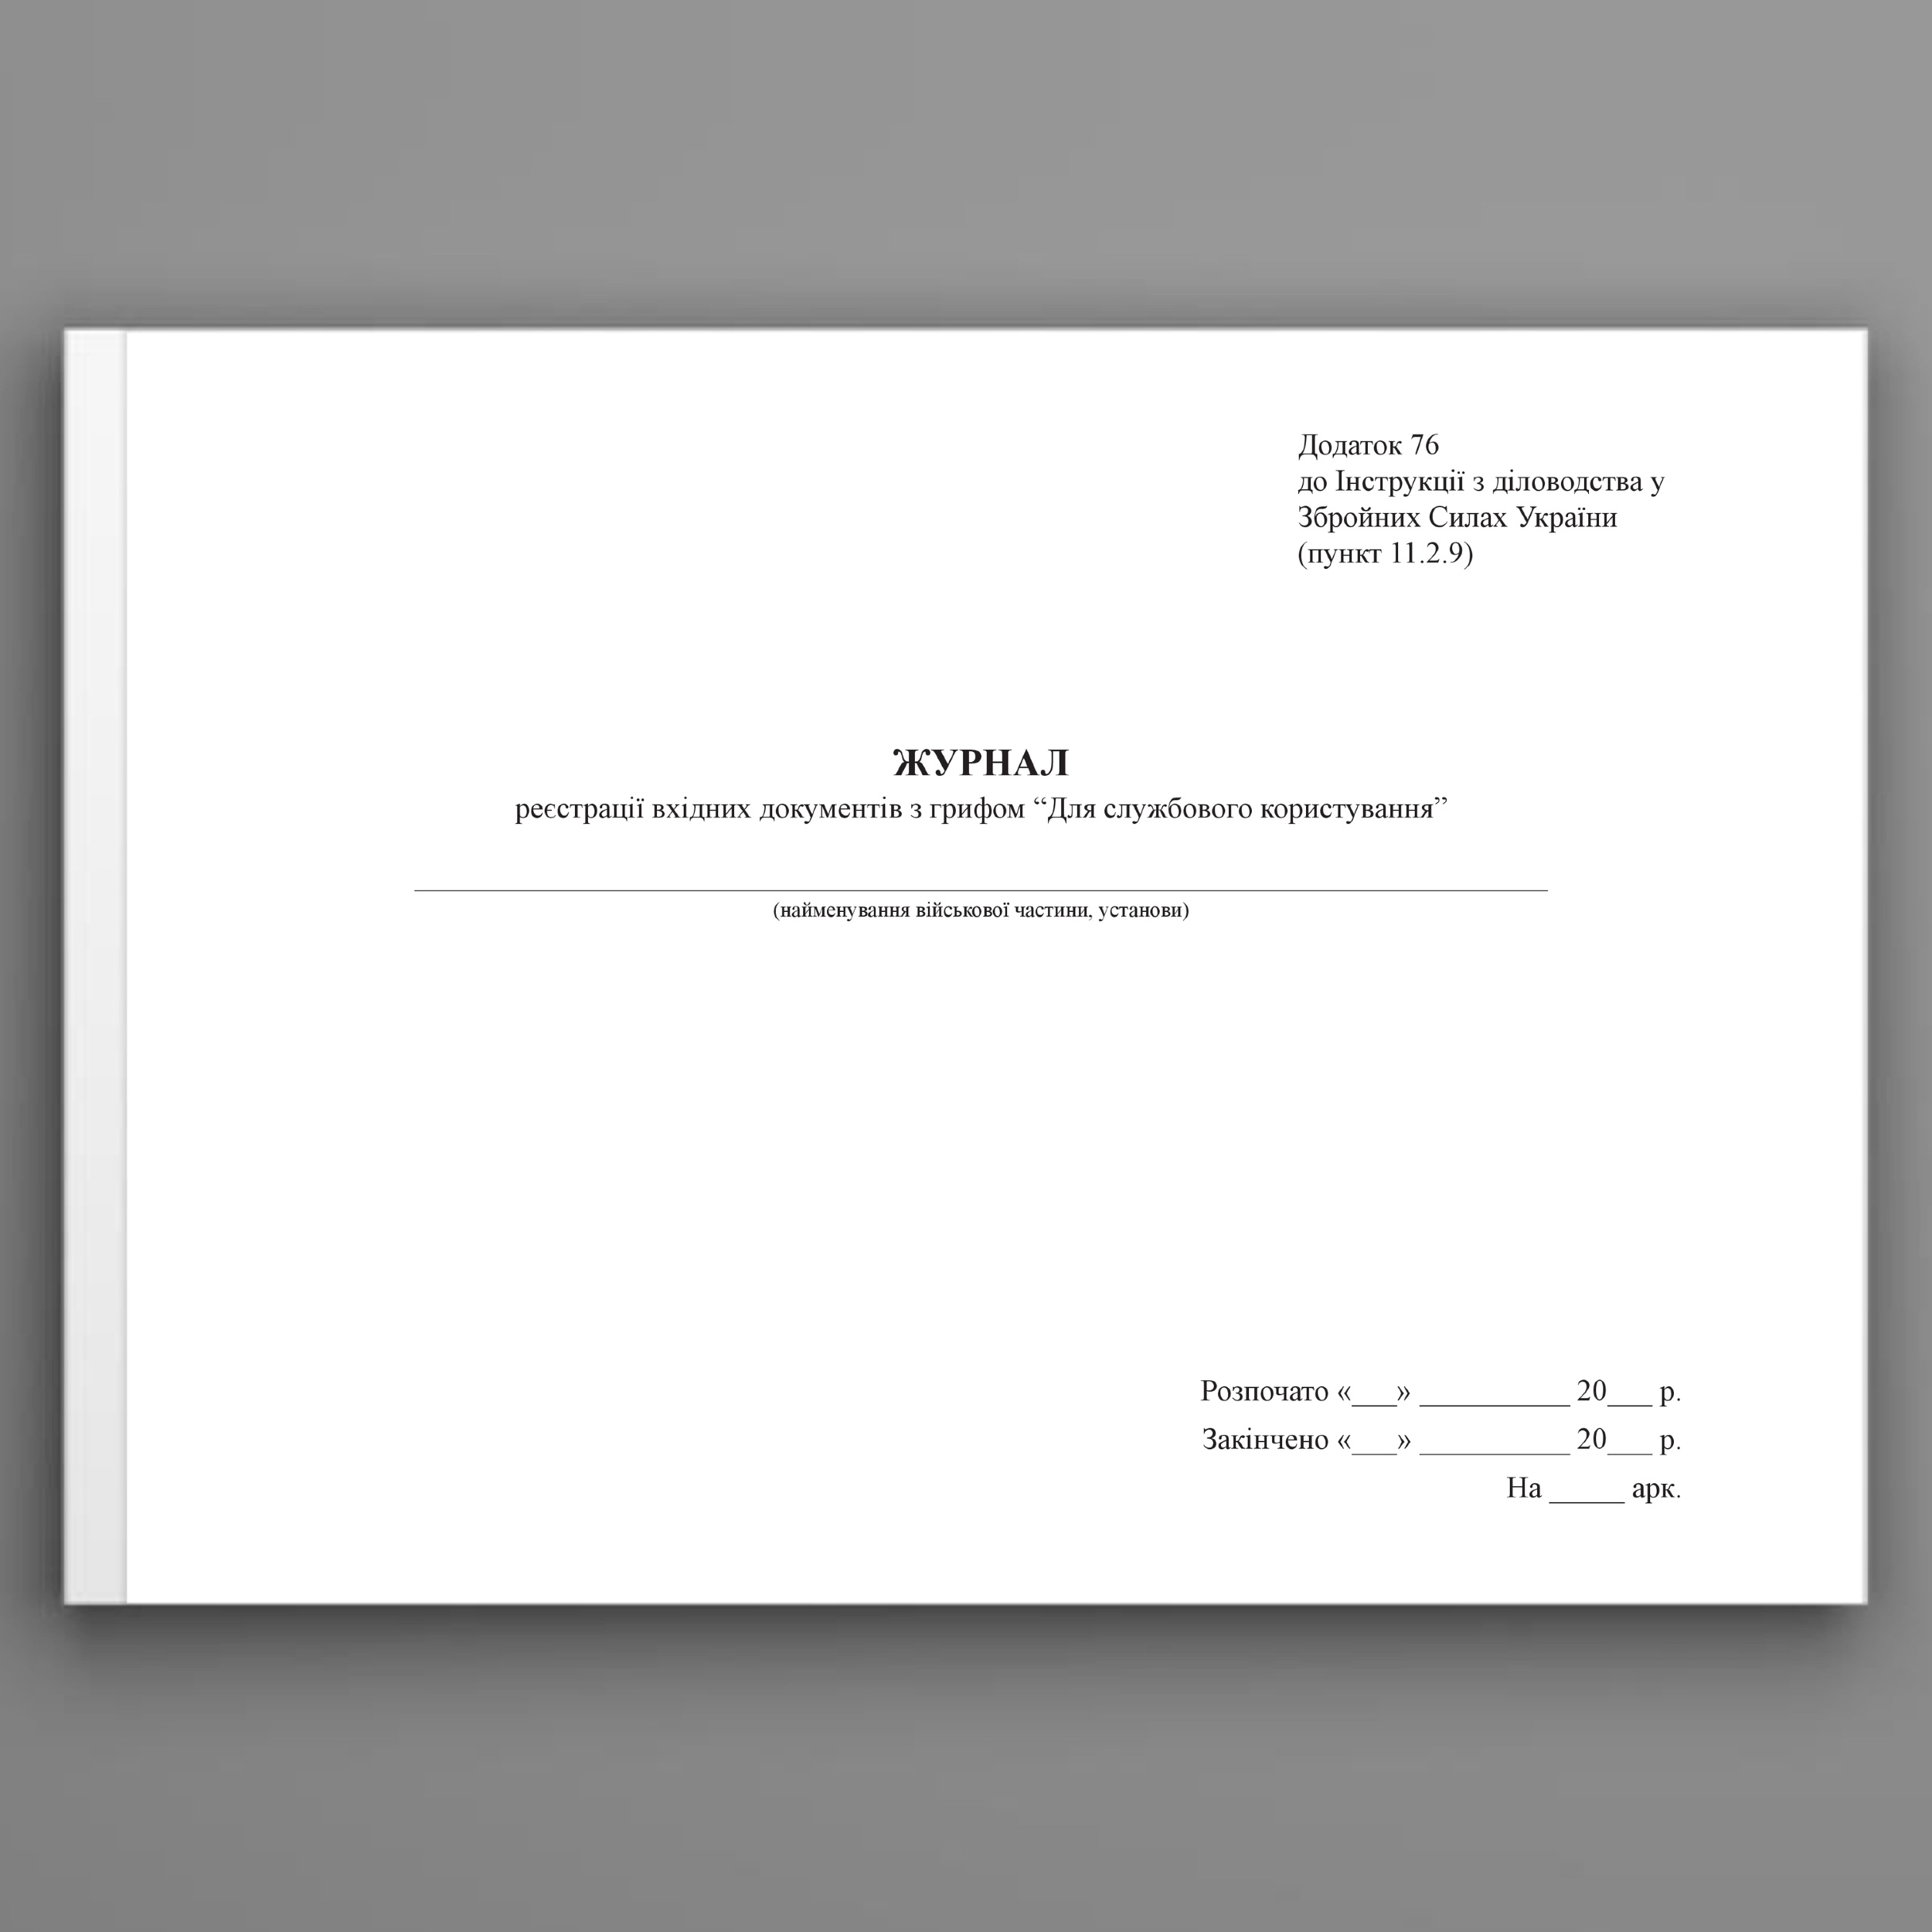 Журнал реєстрації вхідних документів з грифом “Для службового користування”, додаток 76